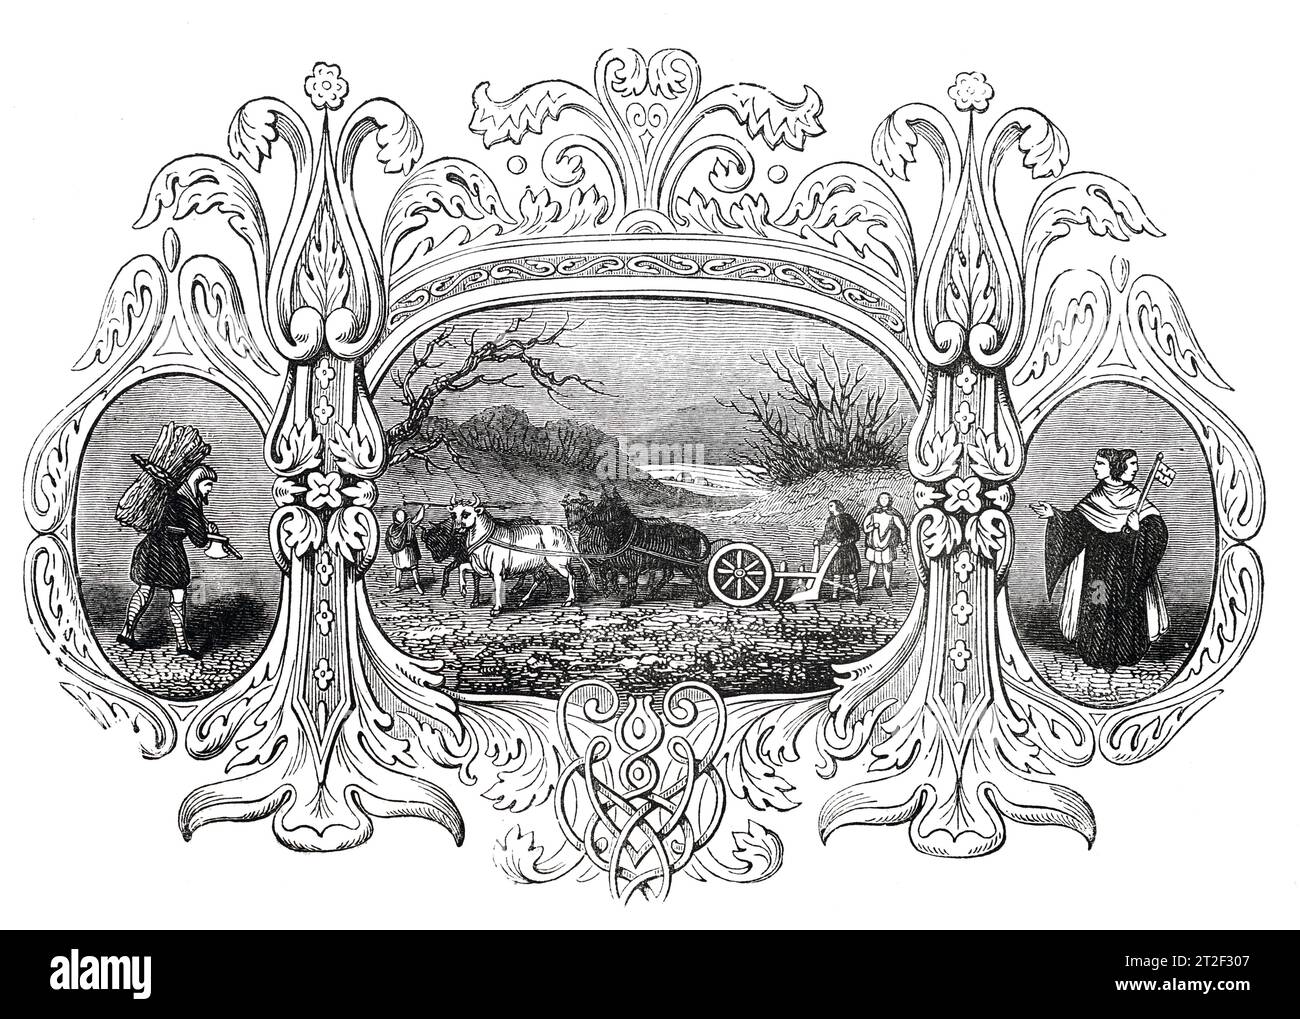 Emblemas sajones del mes de enero. Ilustración en blanco y negro de la 'Vieja Inglaterra' publicada por James Sangster en 1860. Foto de stock